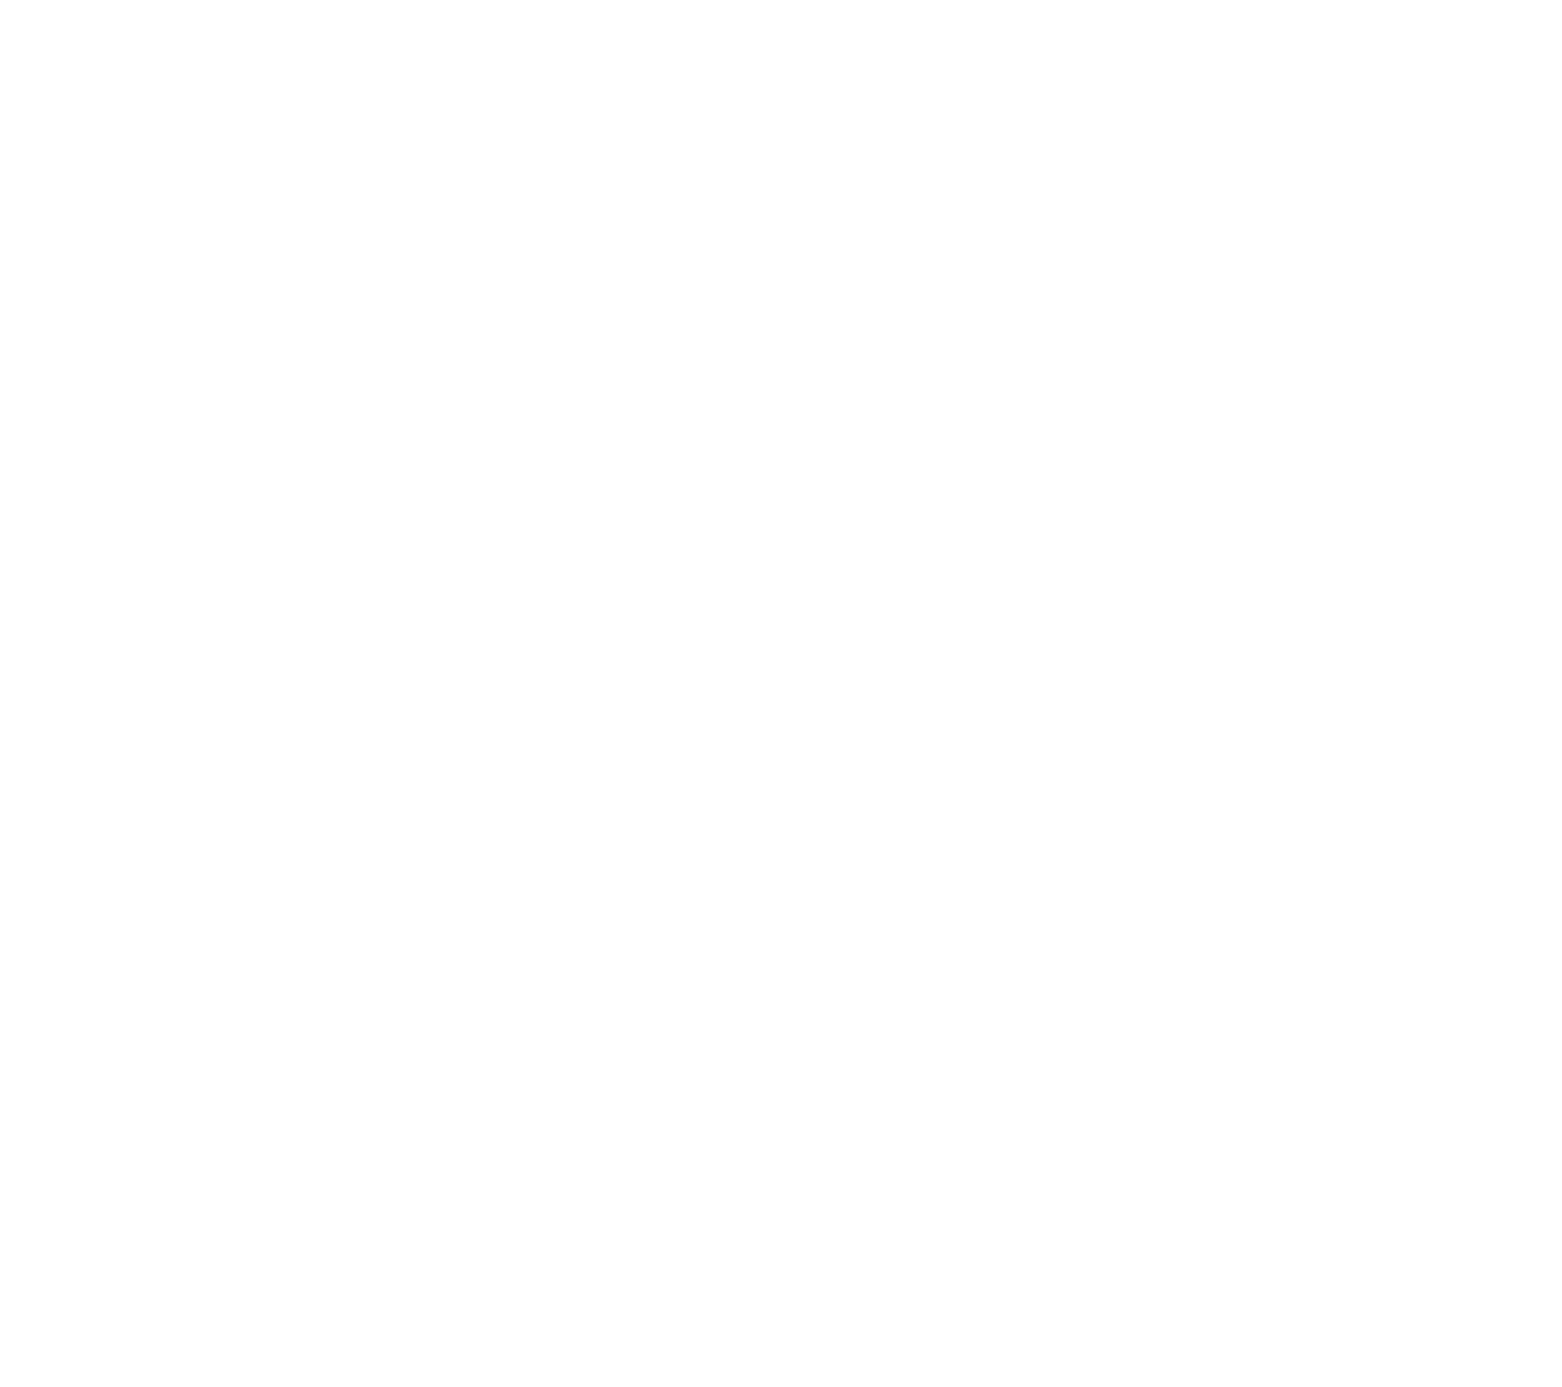 Sterling Bancorp logo large for dark backgrounds (transparent PNG)